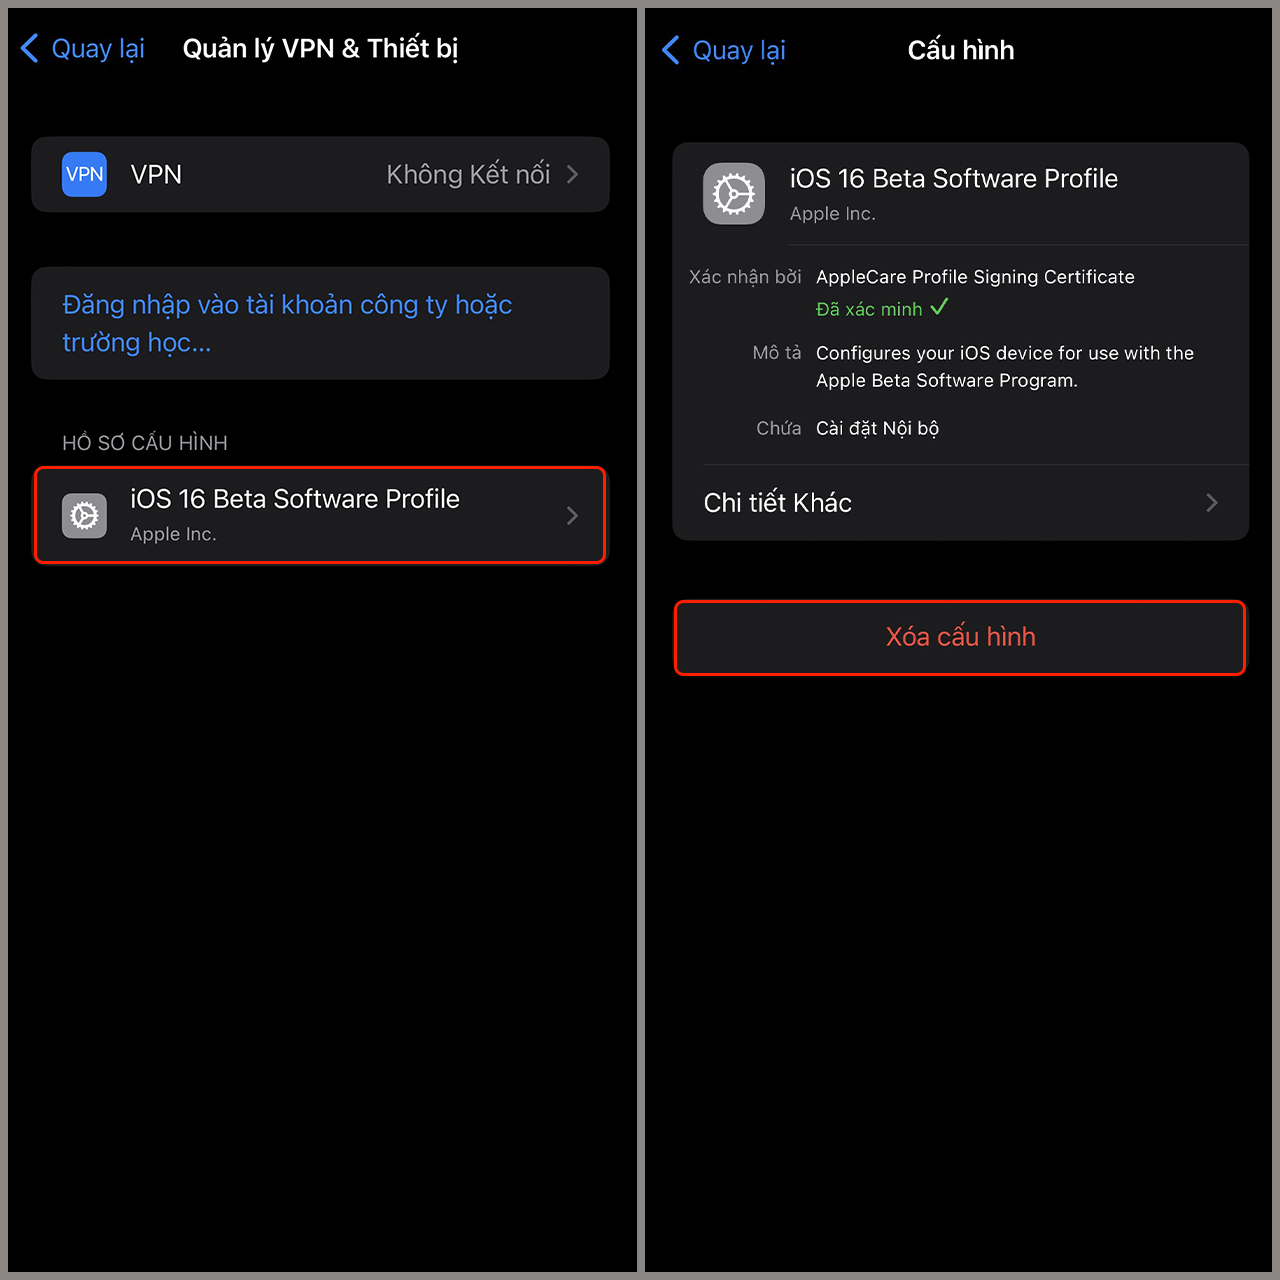 Xóa nút tìm kiếm trên iOS 16: Với phiên bản iOS 16 mới nhất, Apple đã cập nhật tính năng cho phép người dùng tùy chọn xóa nút tìm kiếm khỏi màn hình chính. Điều này sẽ giúp cho không gian màn hình của bạn trở nên sạch sẽ và gọn gàng hơn. Nếu bạn muốn trải nghiệm điện thoại một cách đơn giản hơn, hãy thực hiện tùy chỉnh này ngay bây giờ.